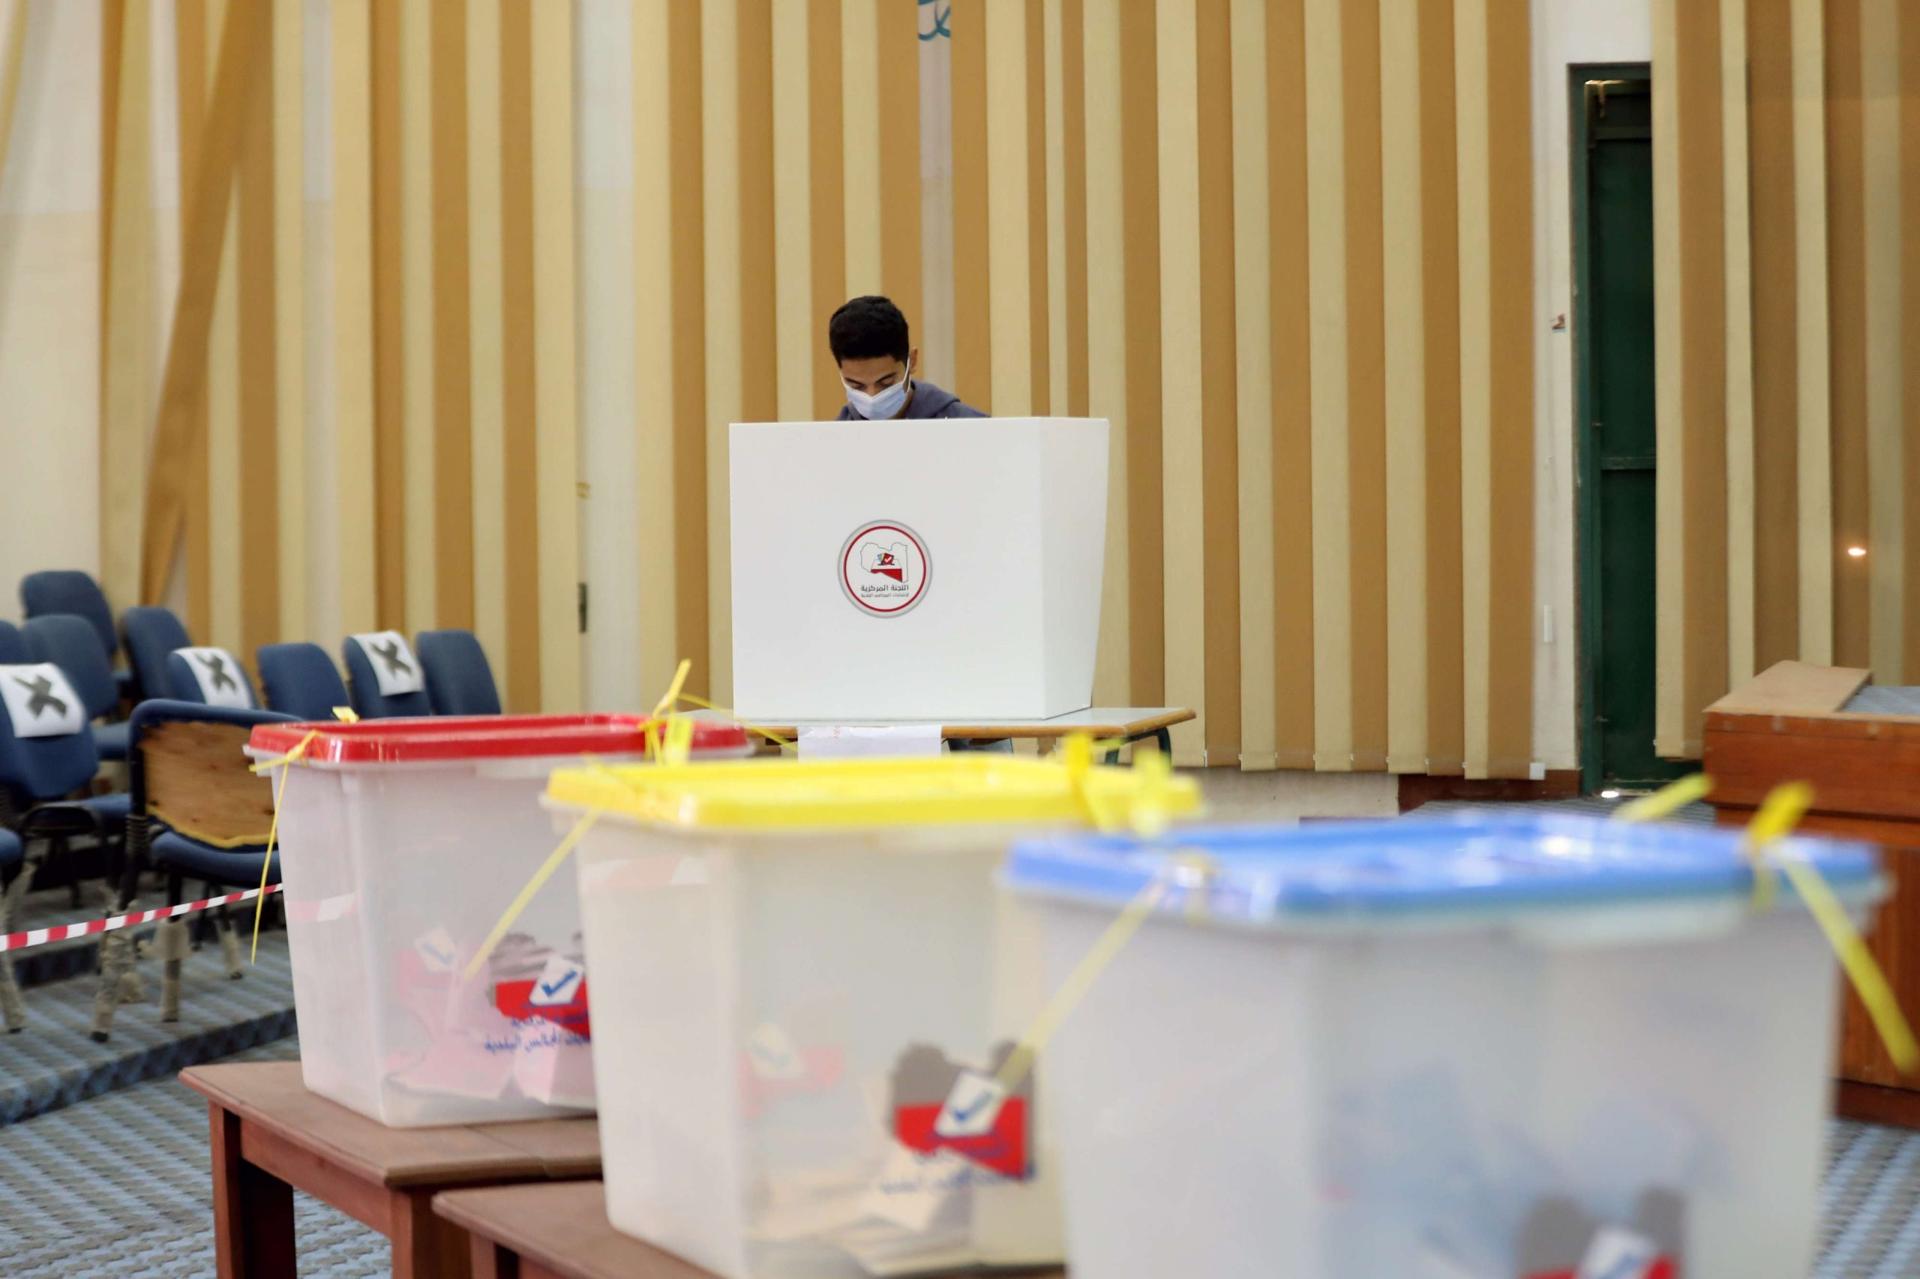 المجلس الأعلى للدولة يعلن عن مبادرة لإجراء الانتخابات الليبية بالتزامن في فبراير